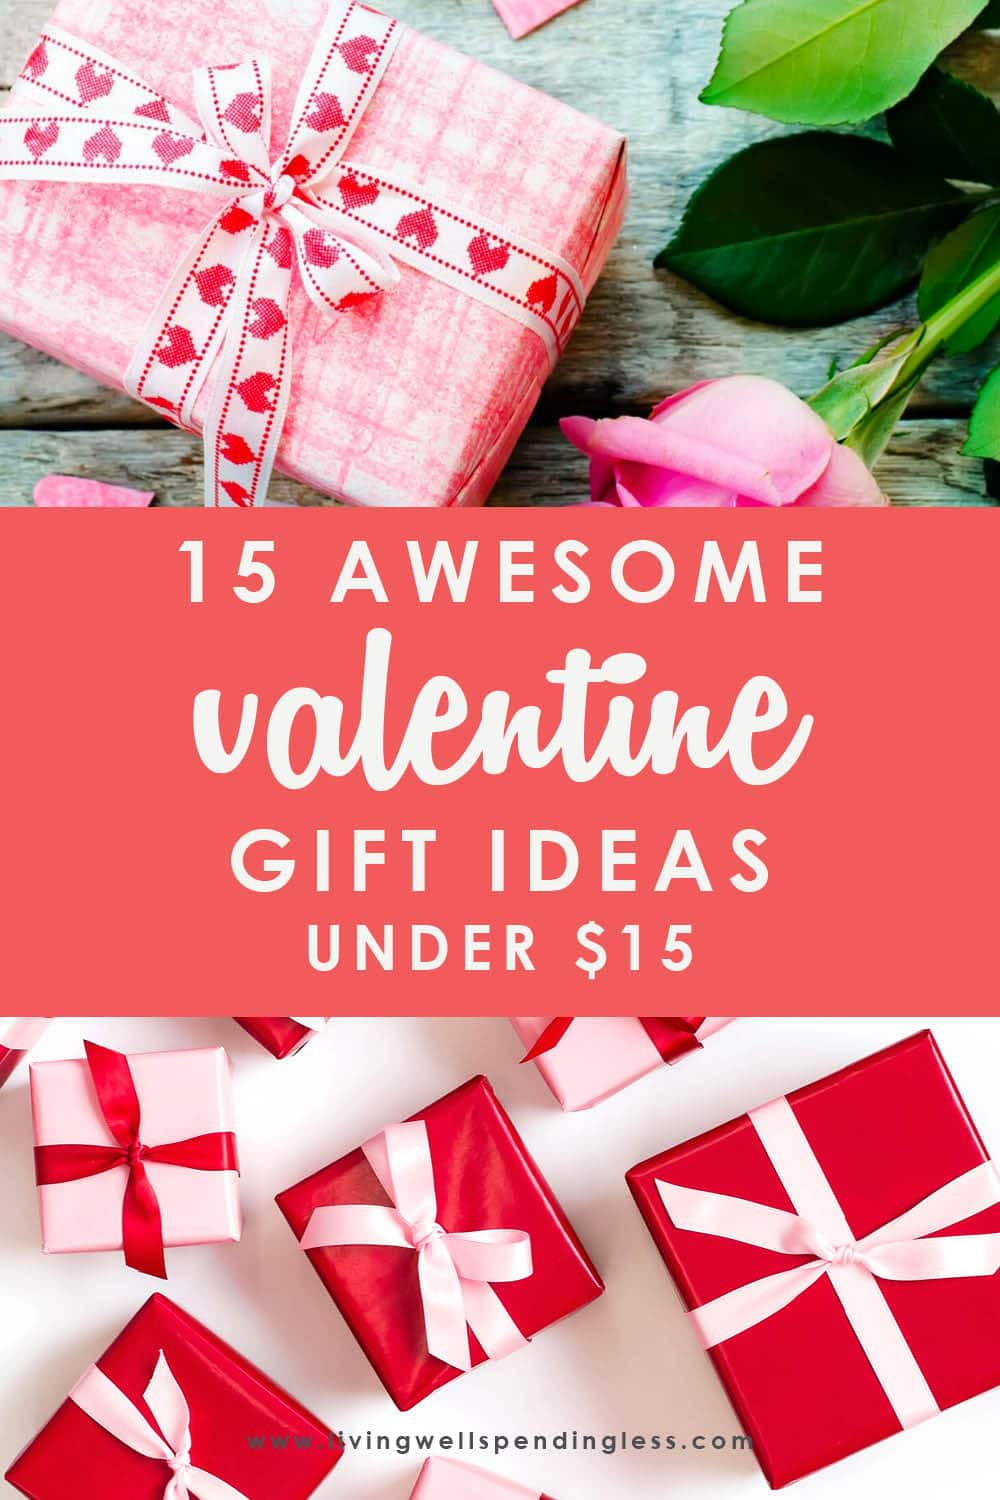 Valentine Gift Ideas Under $10
 15 Awesome Valentine s Day Gift Ideas Under $15